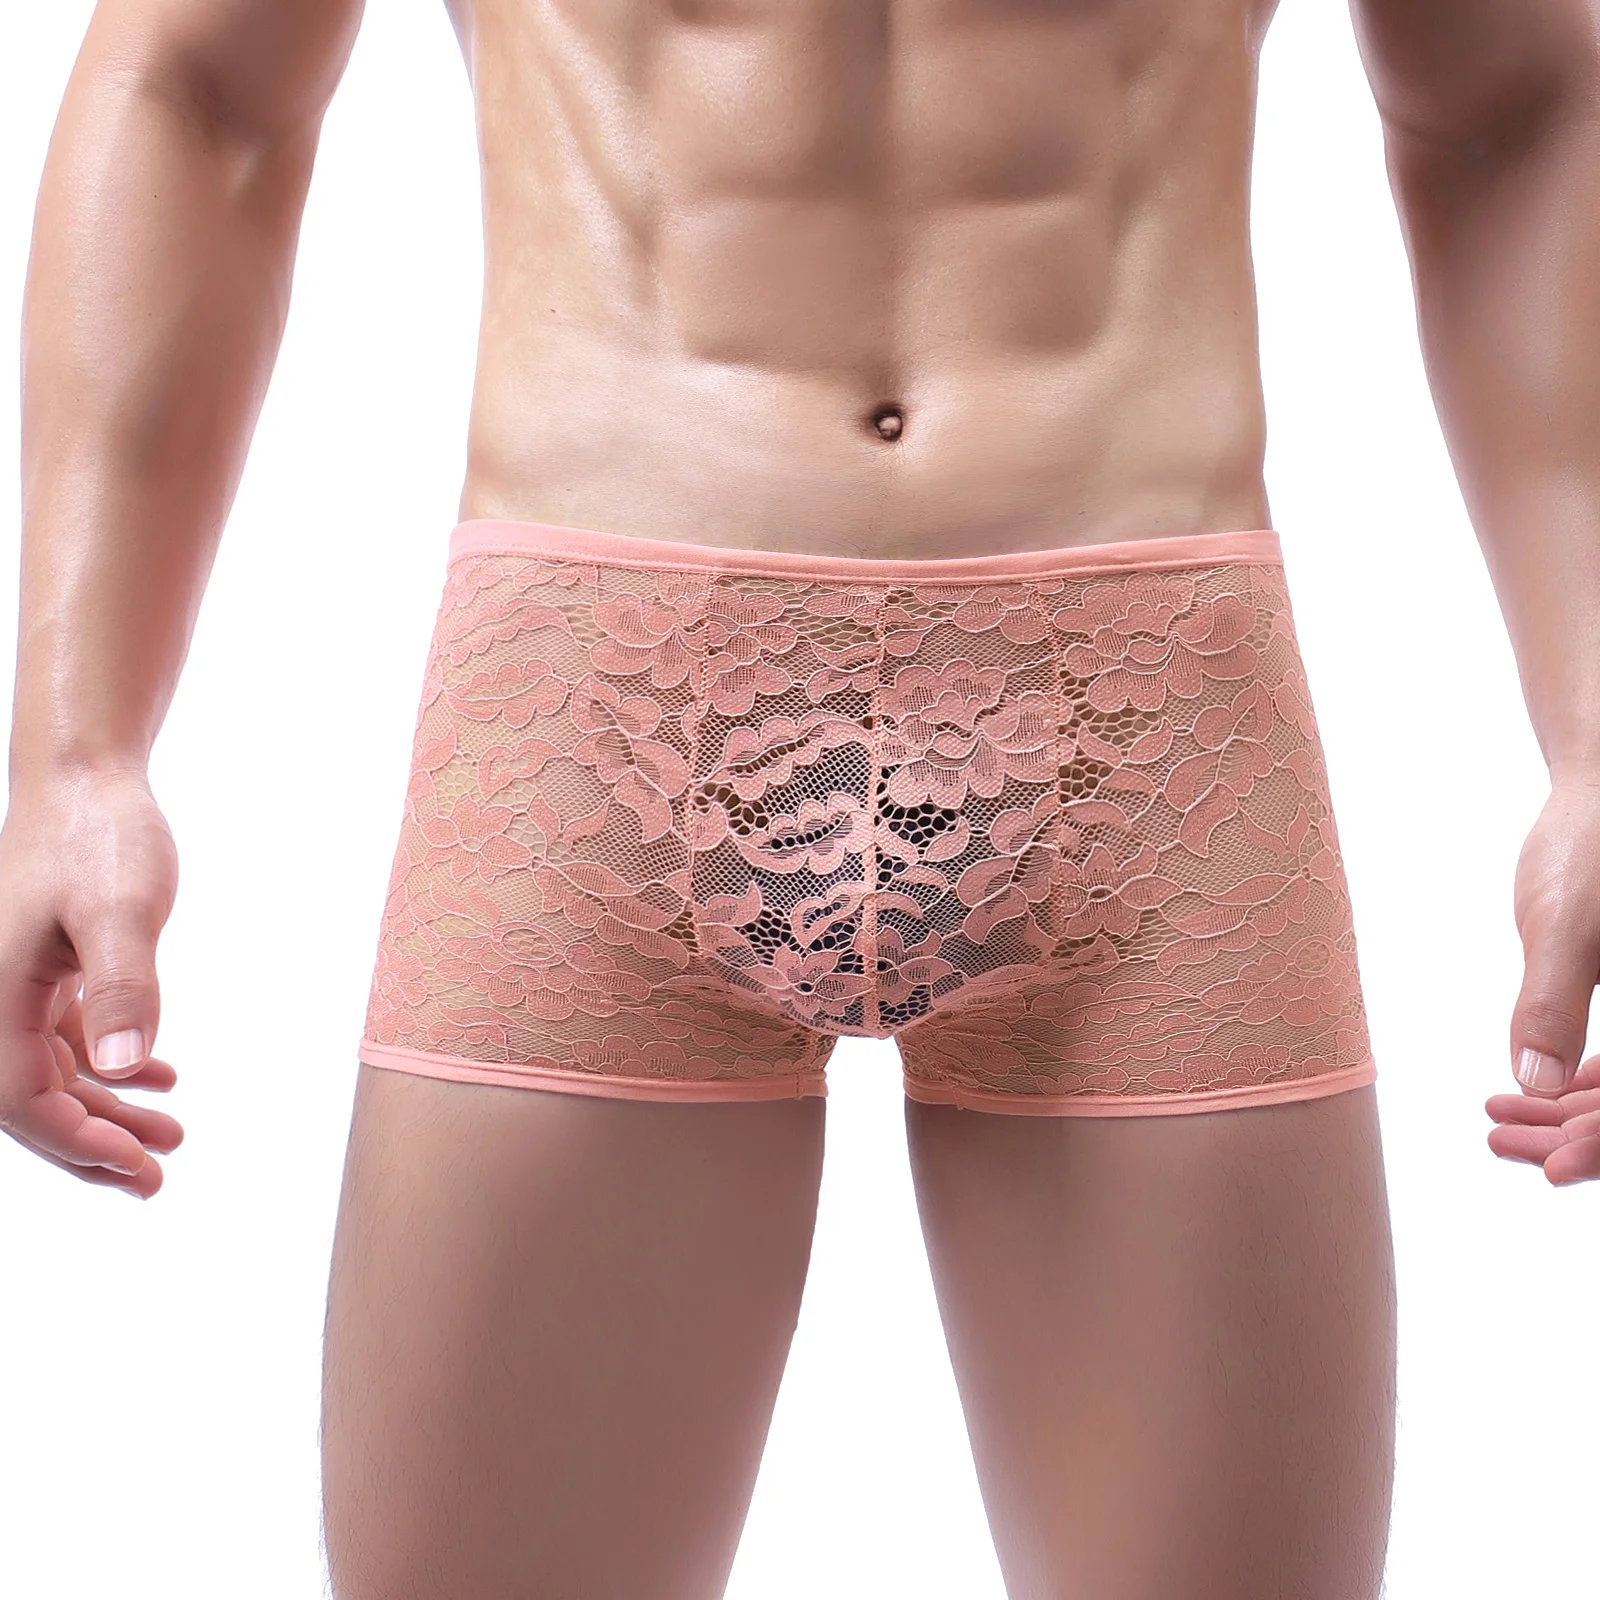 

CLEVER-MENMODE Underwear Lace Boxers Men's See Through Erotic Lingerie Mesh Underpants Bulge Pouch Panties hombre Boxer Shorts